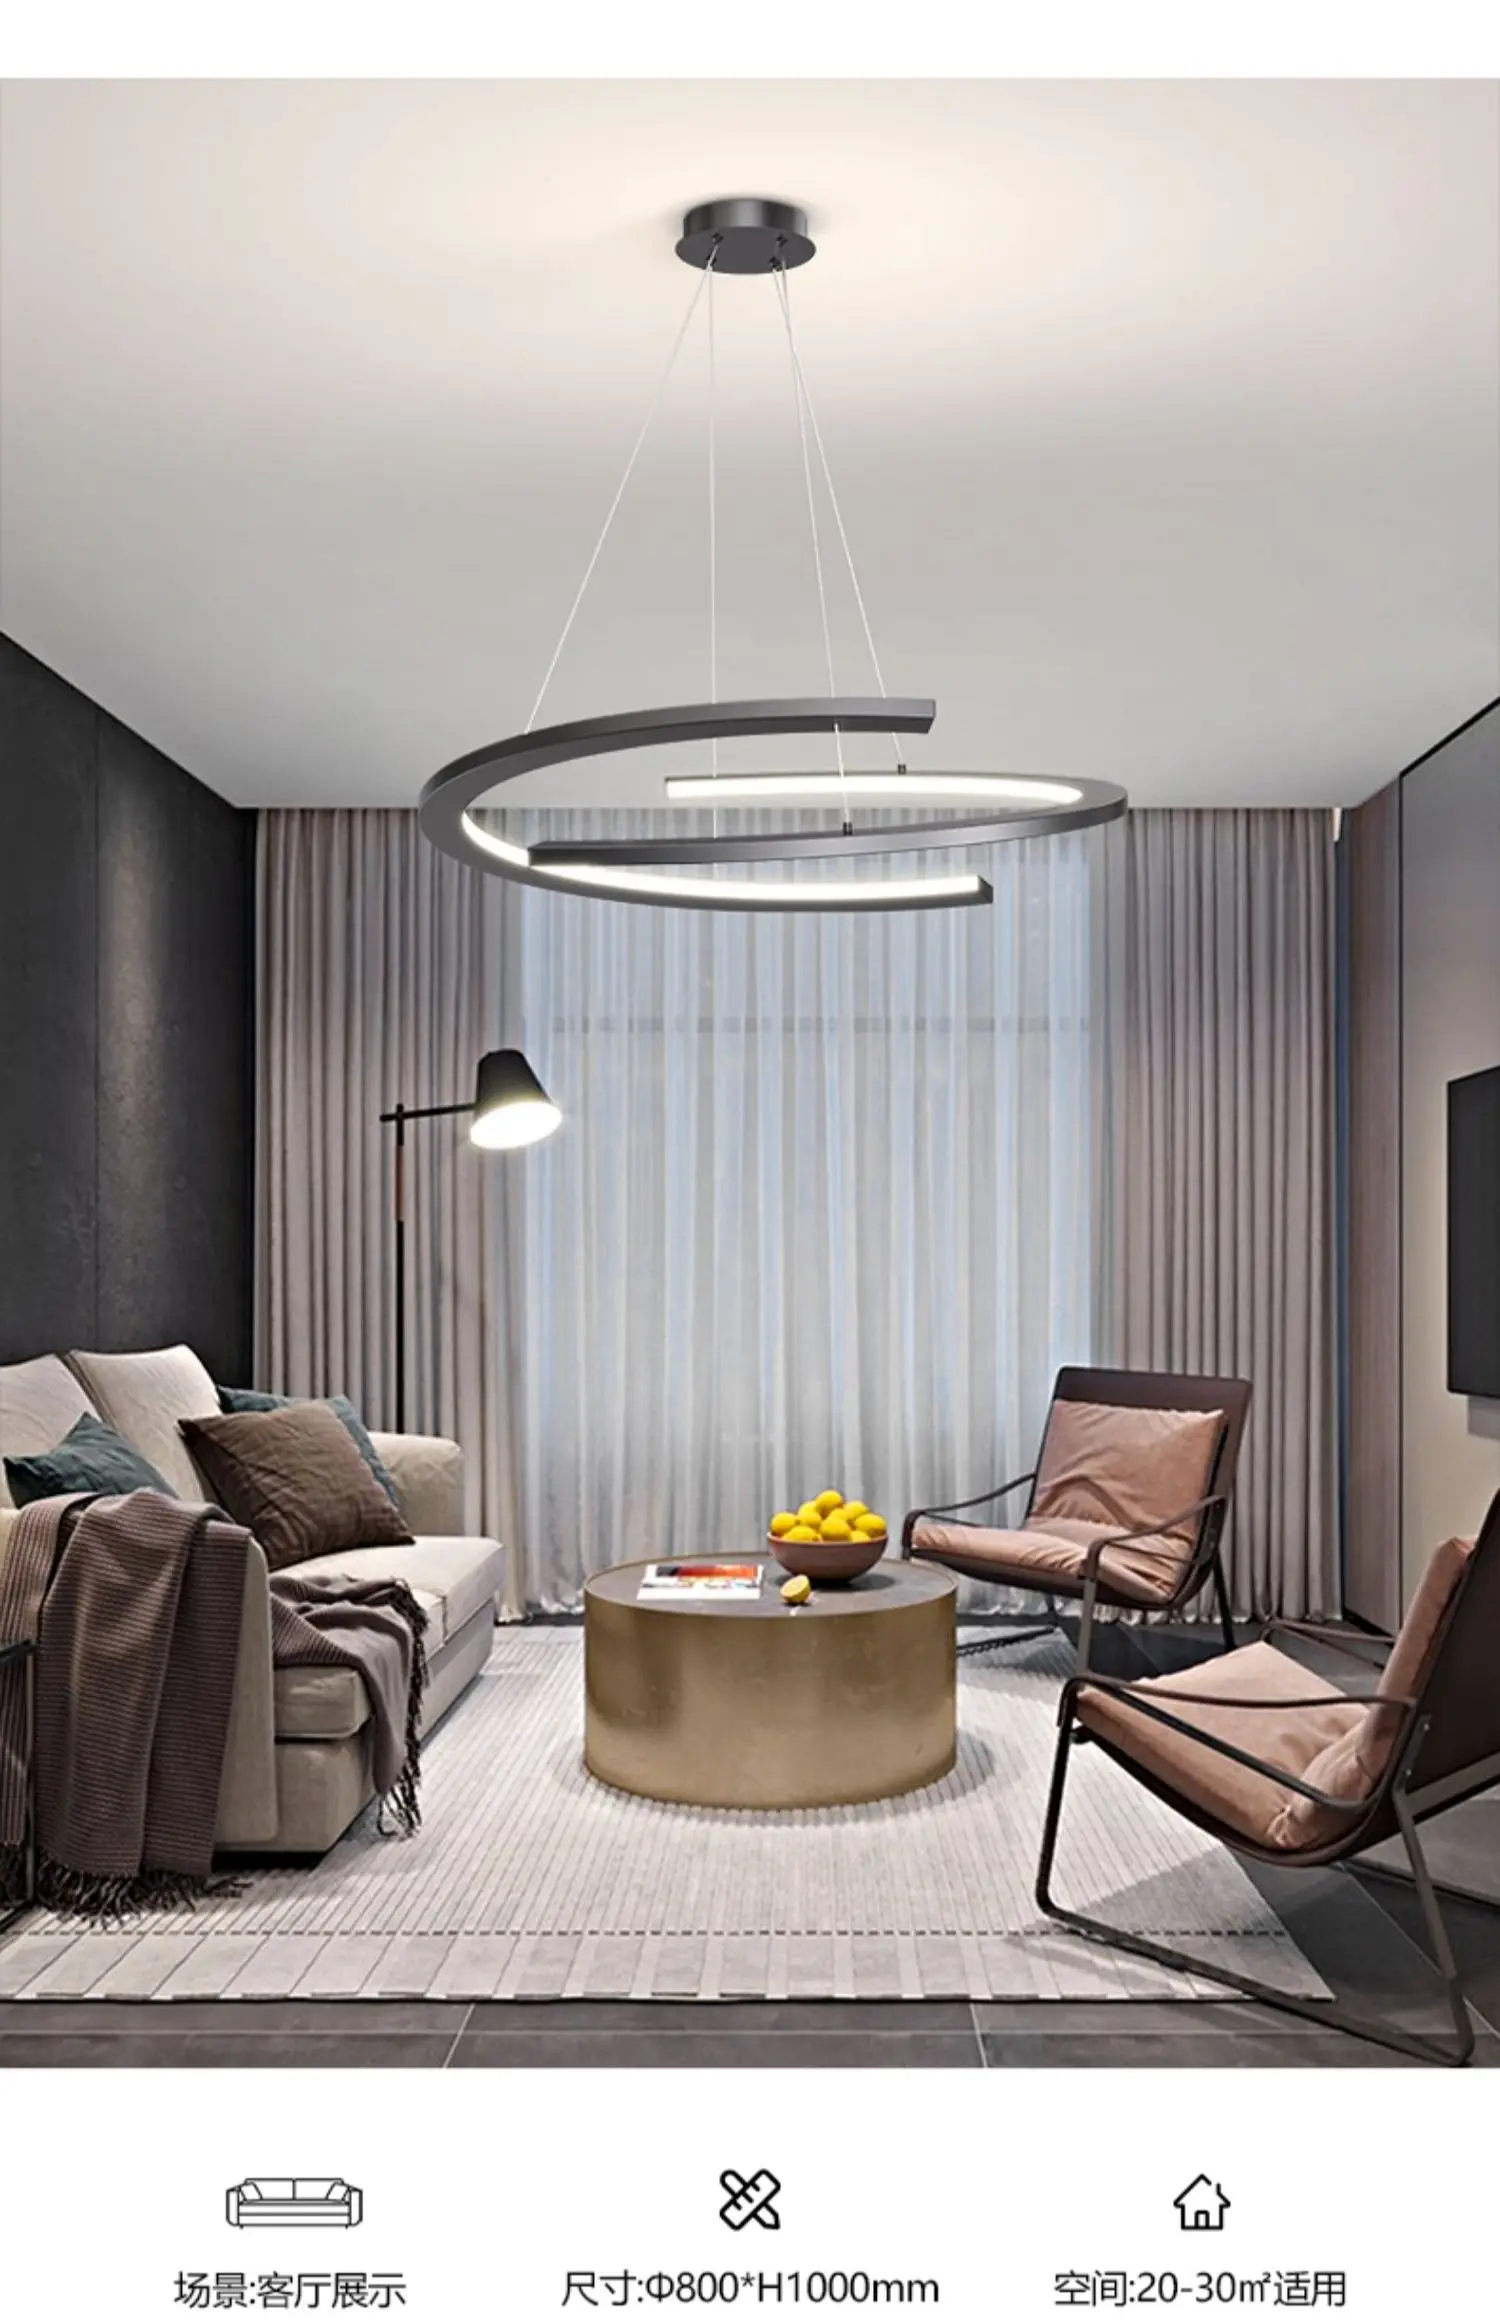 Основное освещение в гостиной в стиле минимализма, современная и простая атмосфера, персонализированный круглый подвесной светильник для ресторана Изображение 5